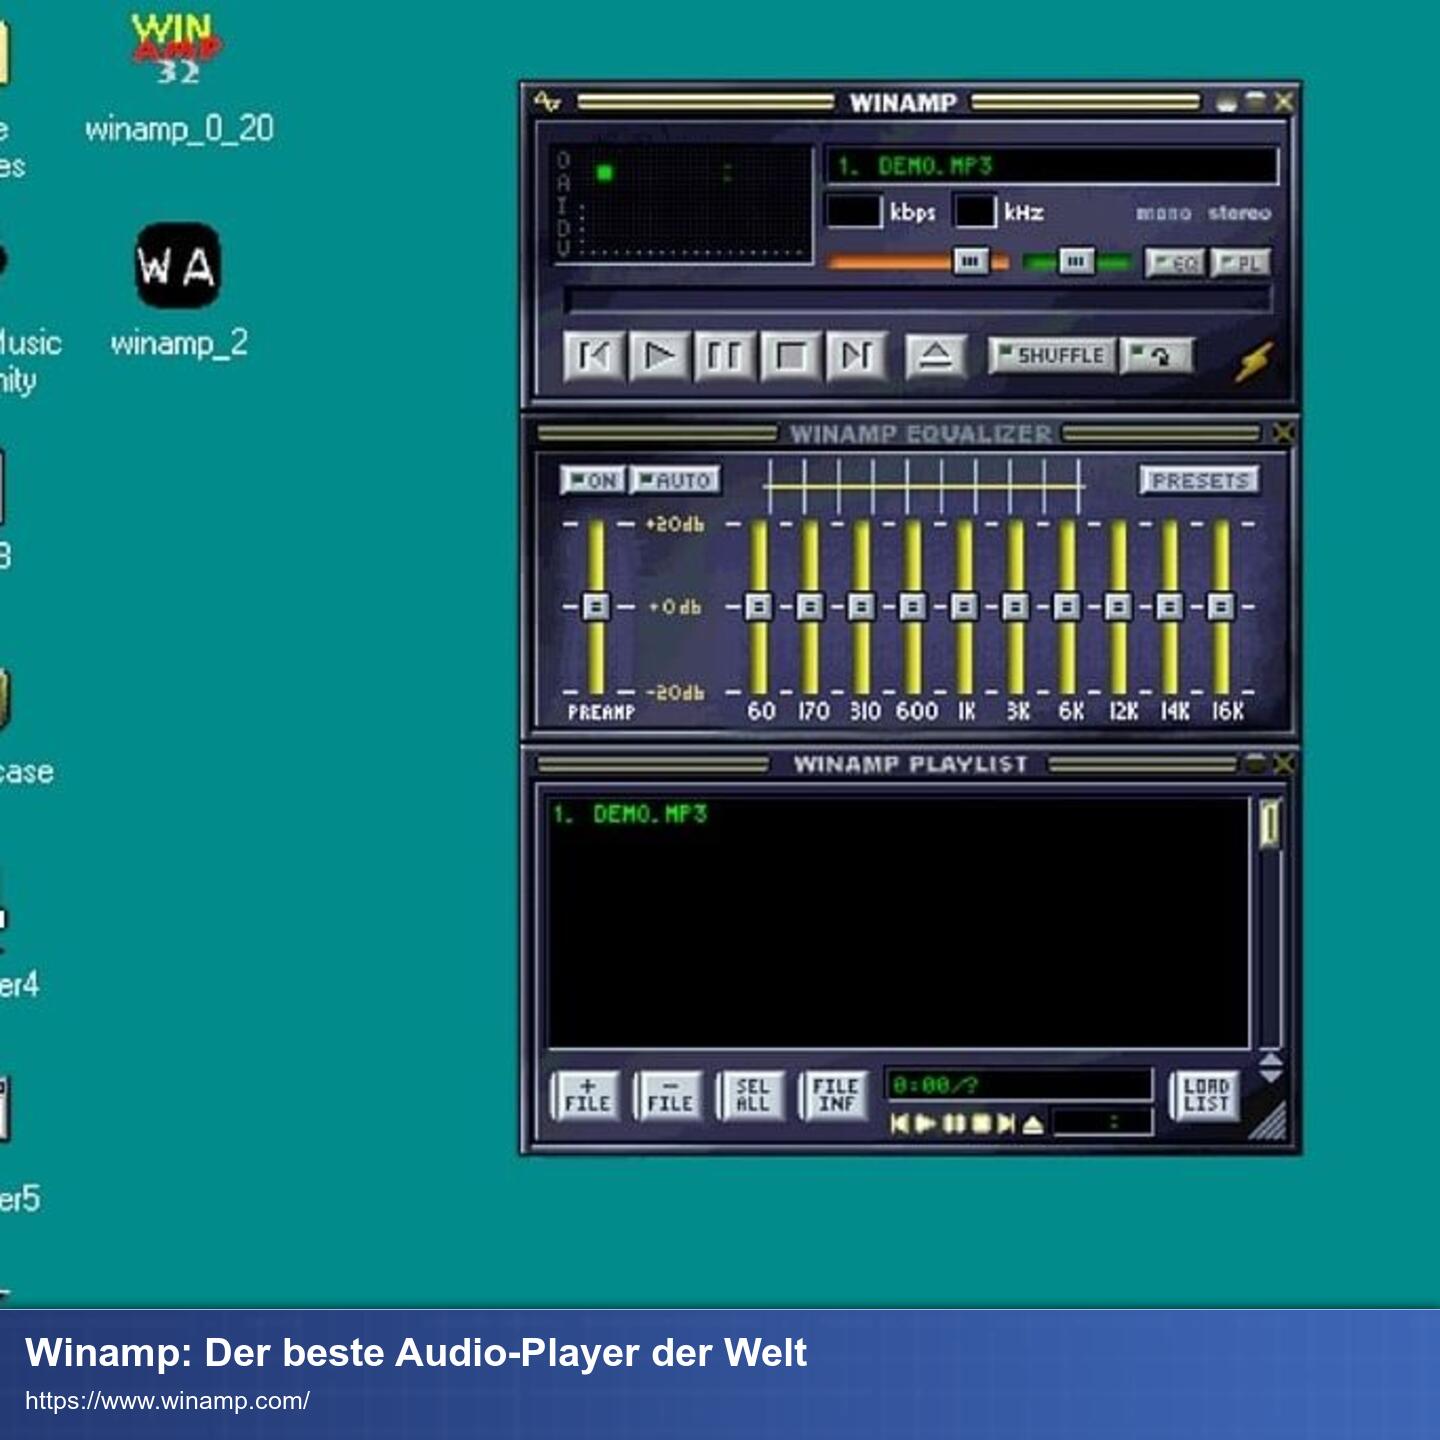 Screenshot von Winamp. Dunkelblaue Oberfläche mit farbigen Equalizern und anderen grauen Kontrollelementen.